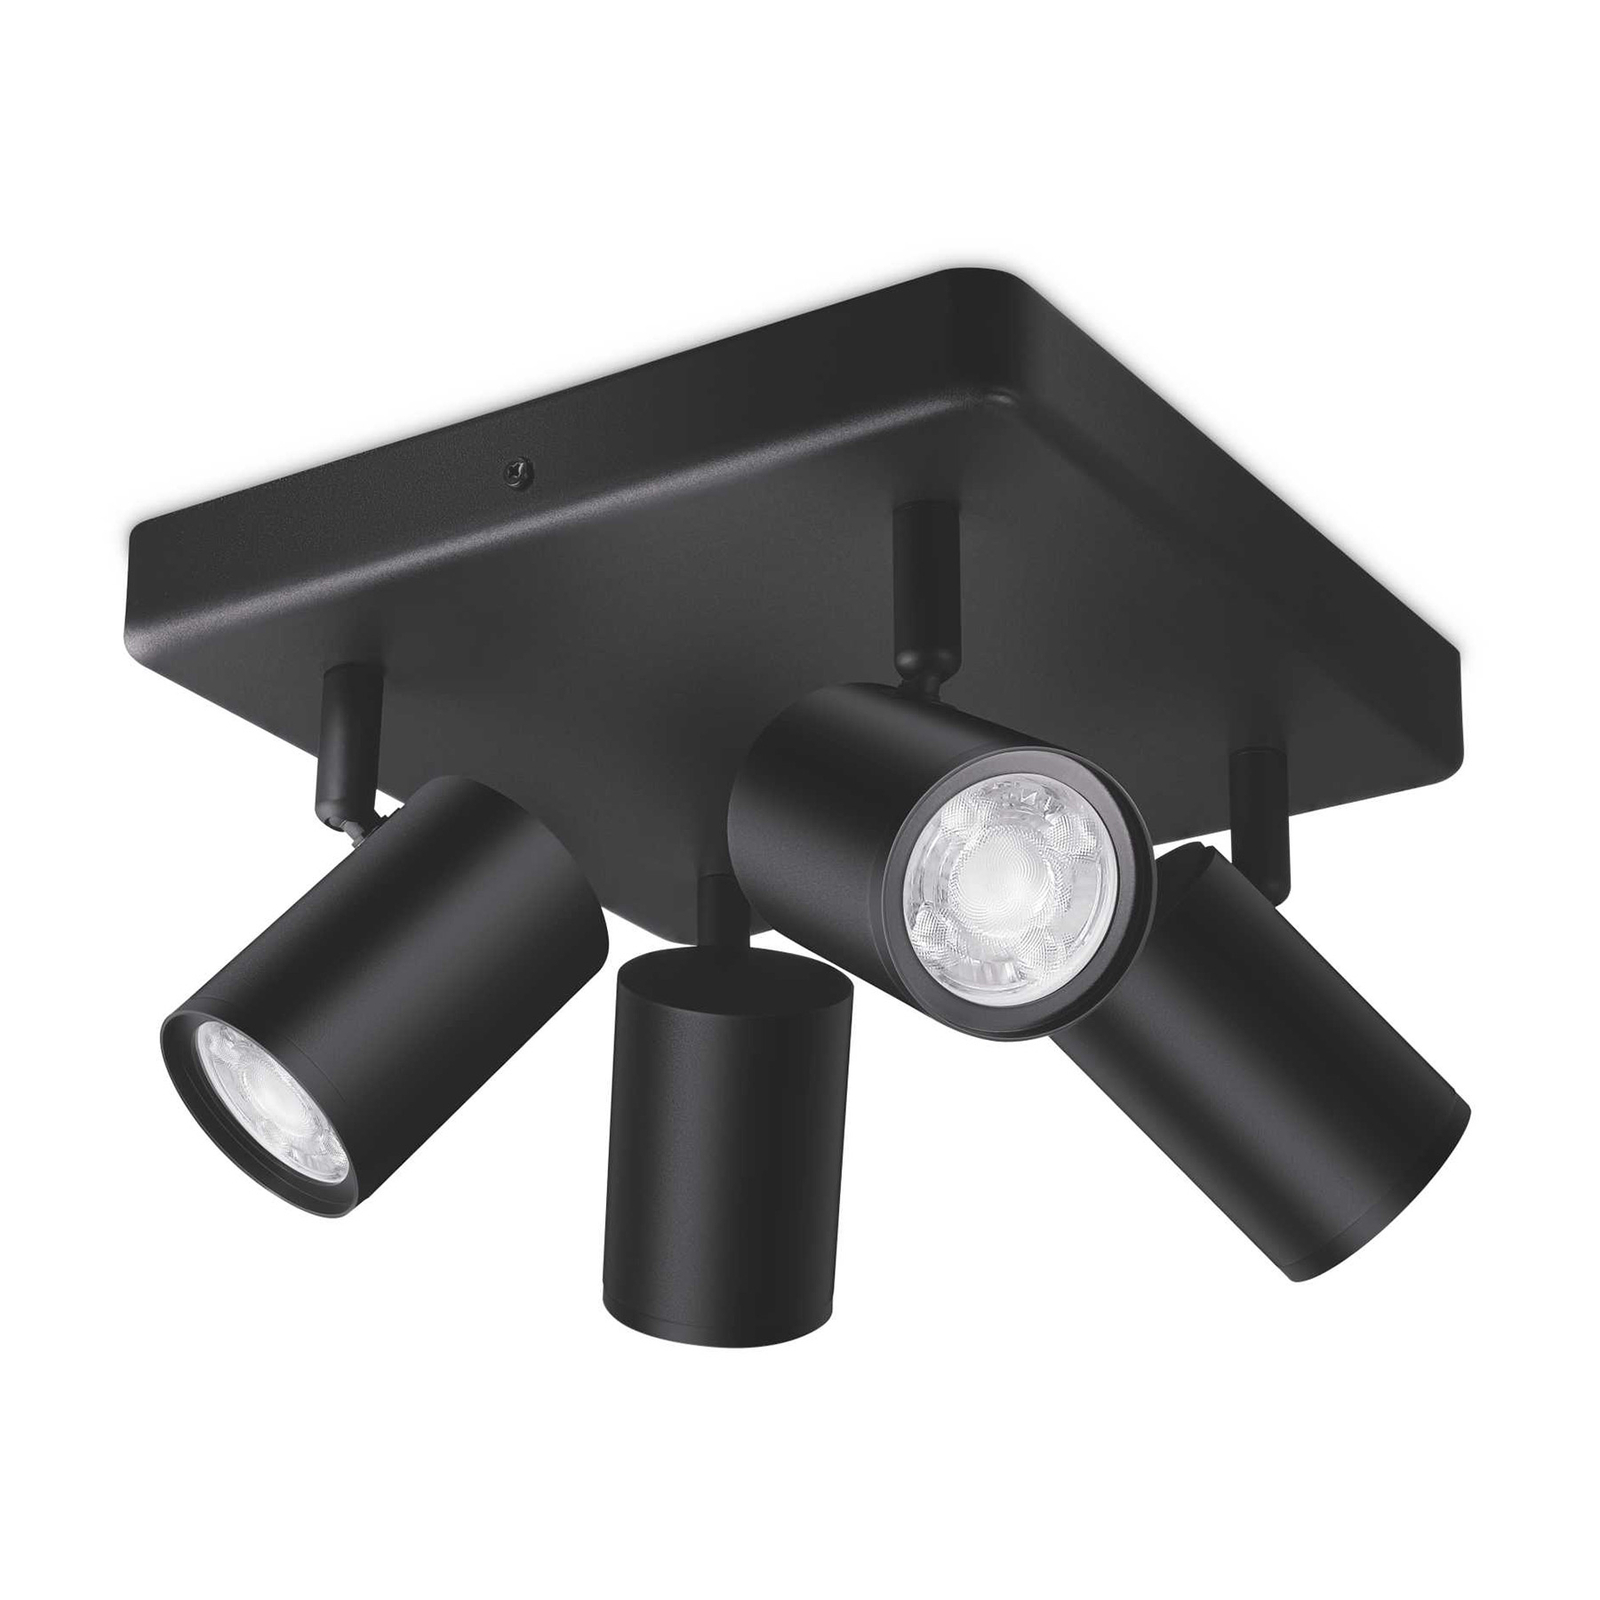 WiZ LED спот за таван Imageo, 4fl квадрат, черен